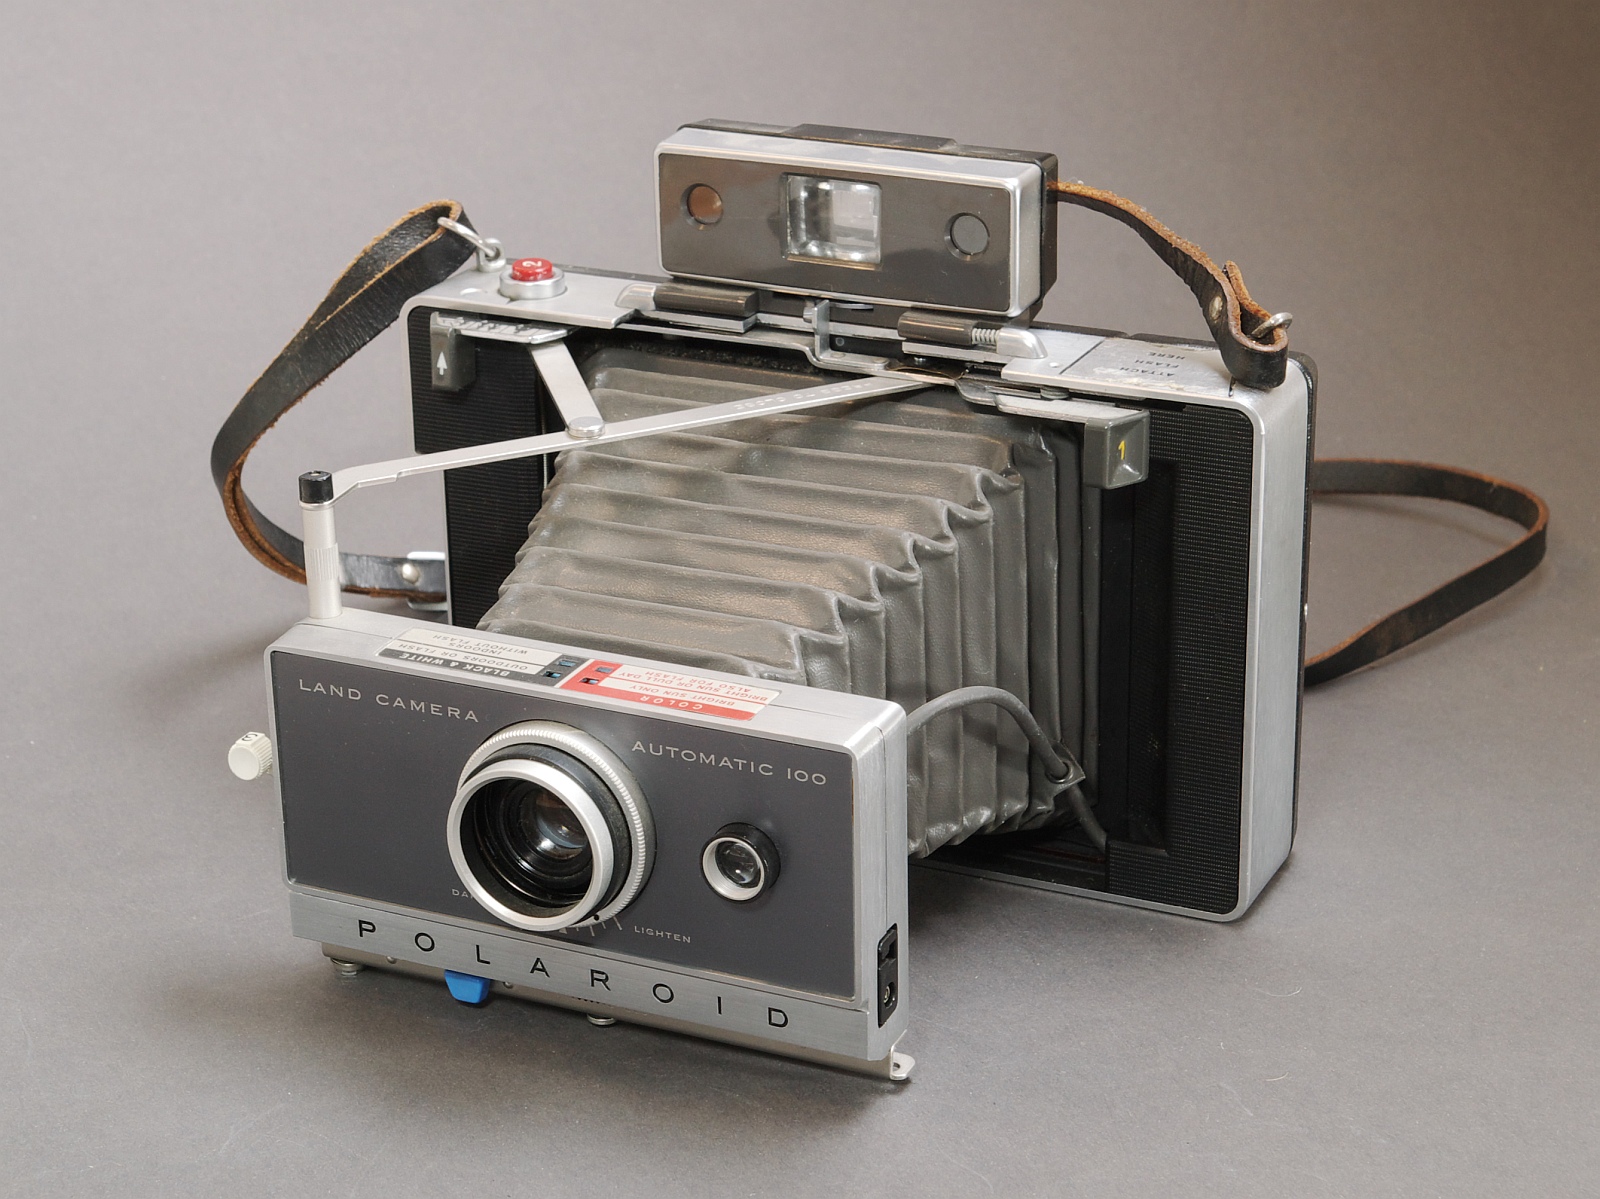 Первый фотоаппарат. Полароид 1963. Первый фотоаппарат Polaroid 1963. Polaroid 100 Land Camera. Polaroid Land Camera Automatic 350.